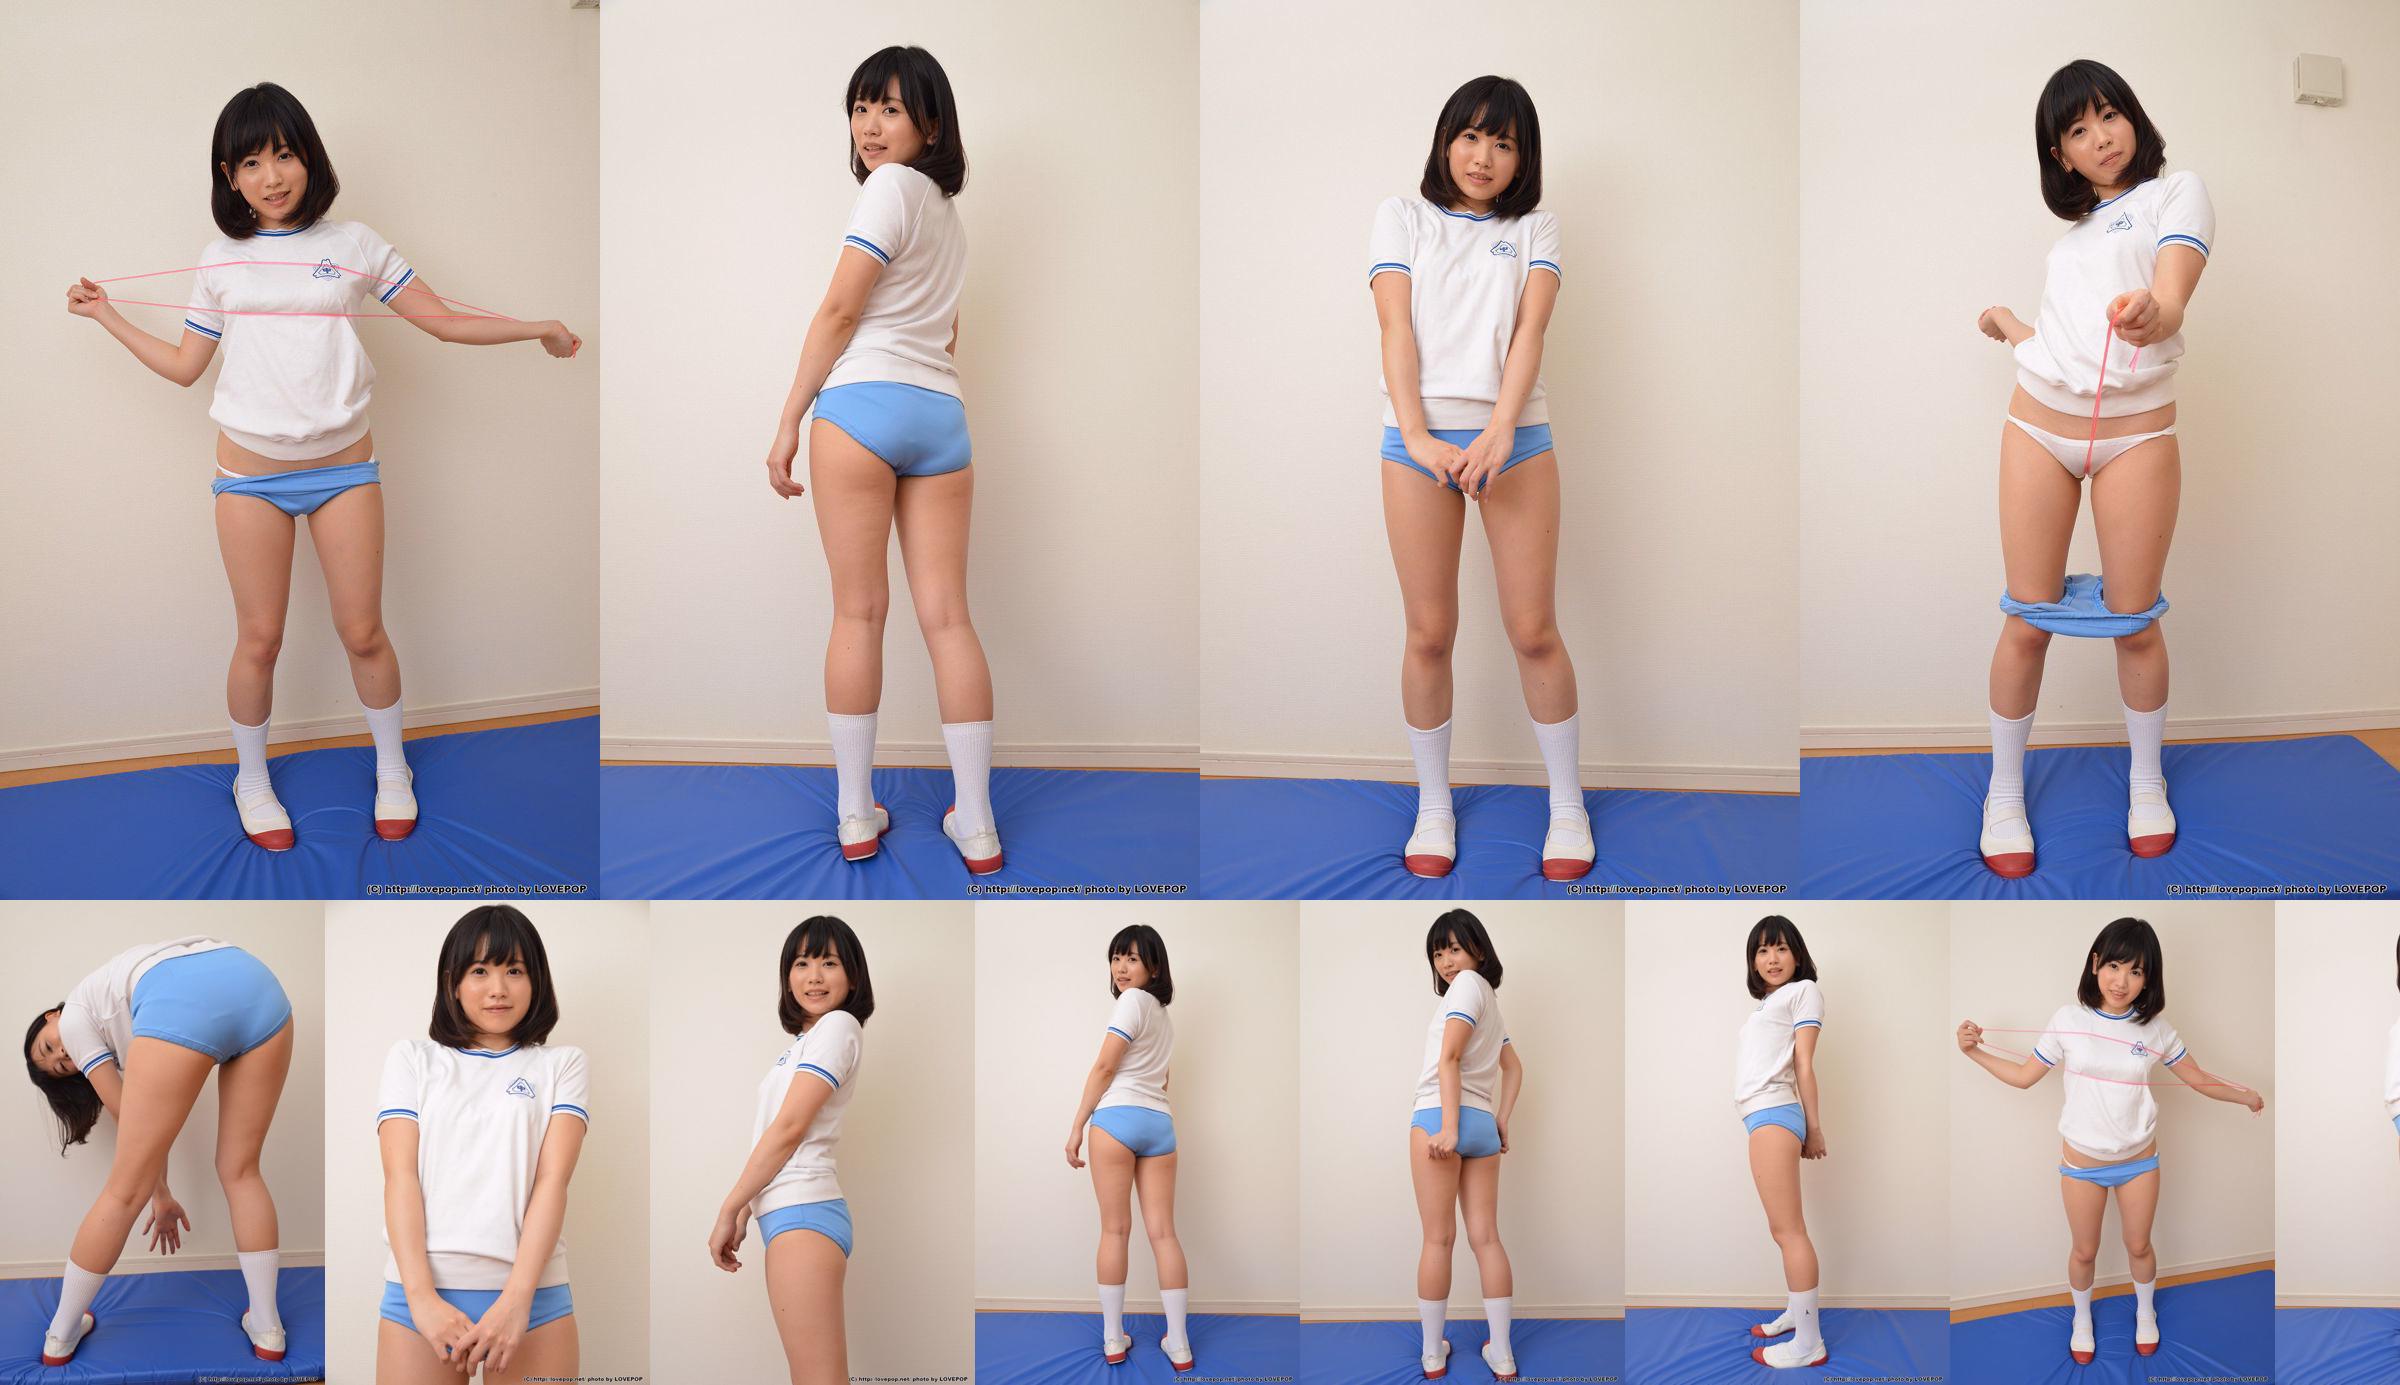 [LOVEPOP] Yuna Kimino Yuna Kimino Fotoset 01 No.861cd2 Seite 2